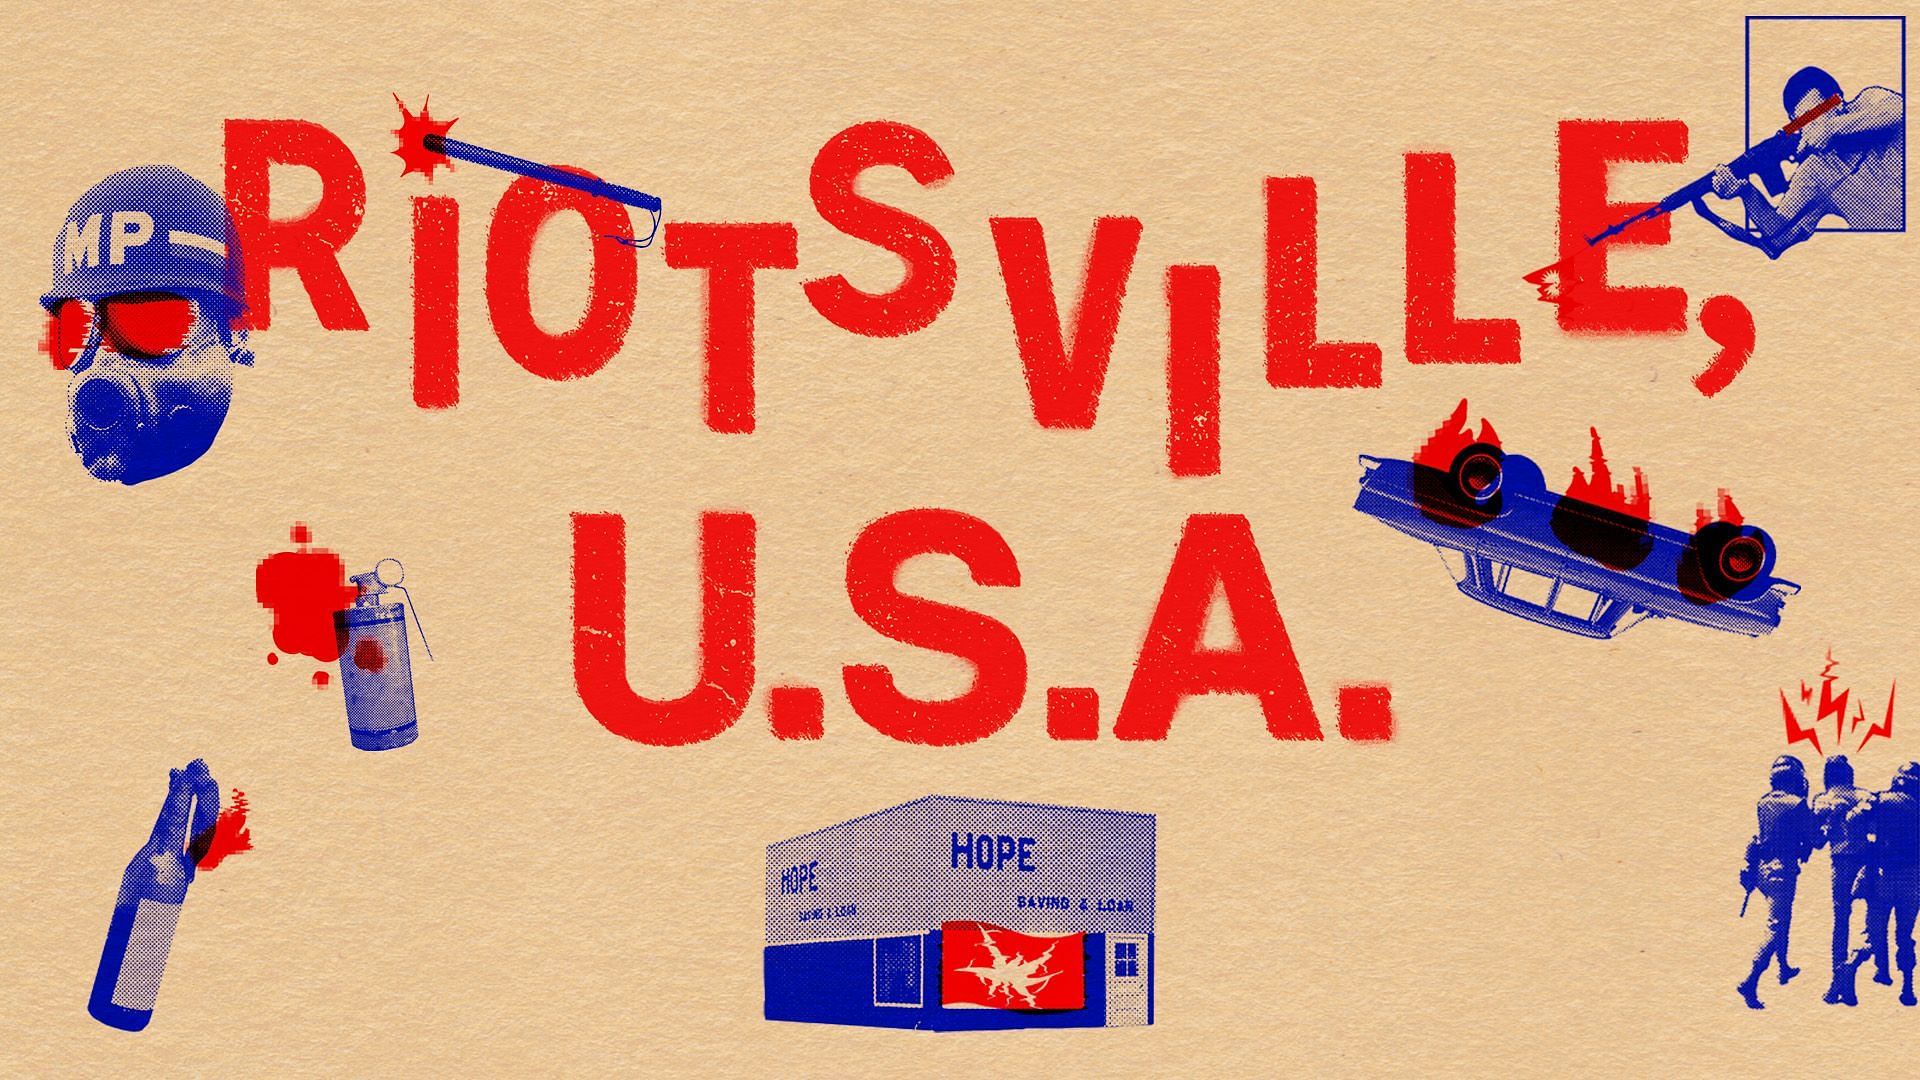 Riotsville, U.S.A. (Image via Magnolia Pictures)